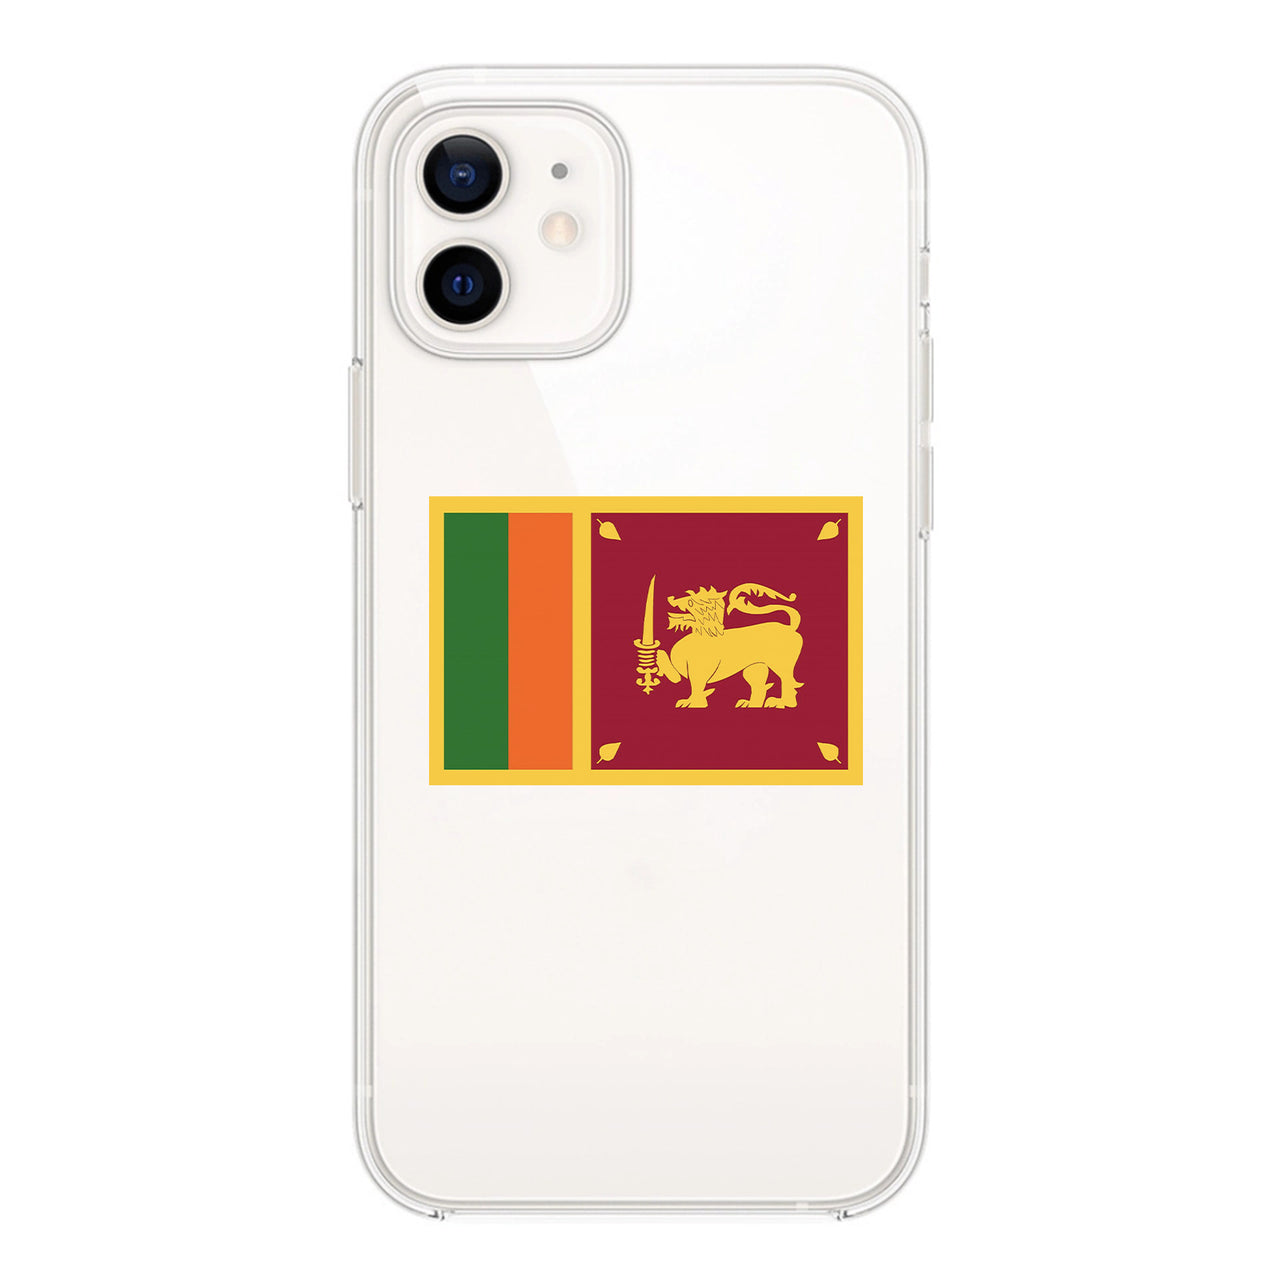 Sri Lanka Designed Transparent Silicone iPhone Cases